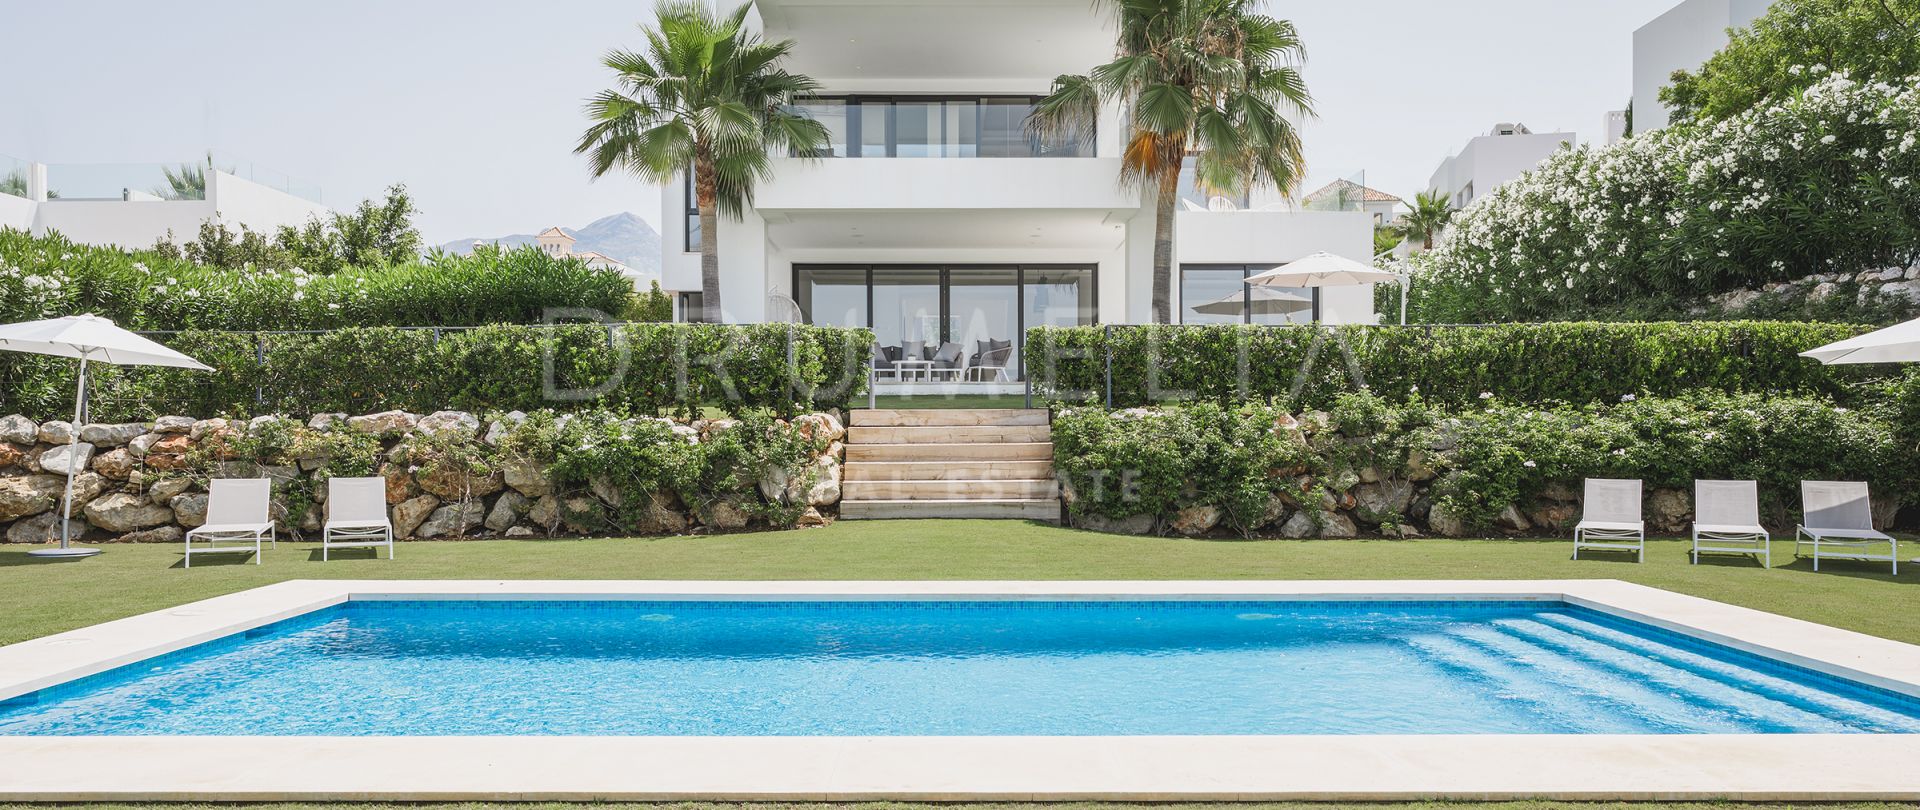 Nouvelle villa contemporaine haut de gamme pour un style de vie moderne, Los Olivos,Nueva Andalucía